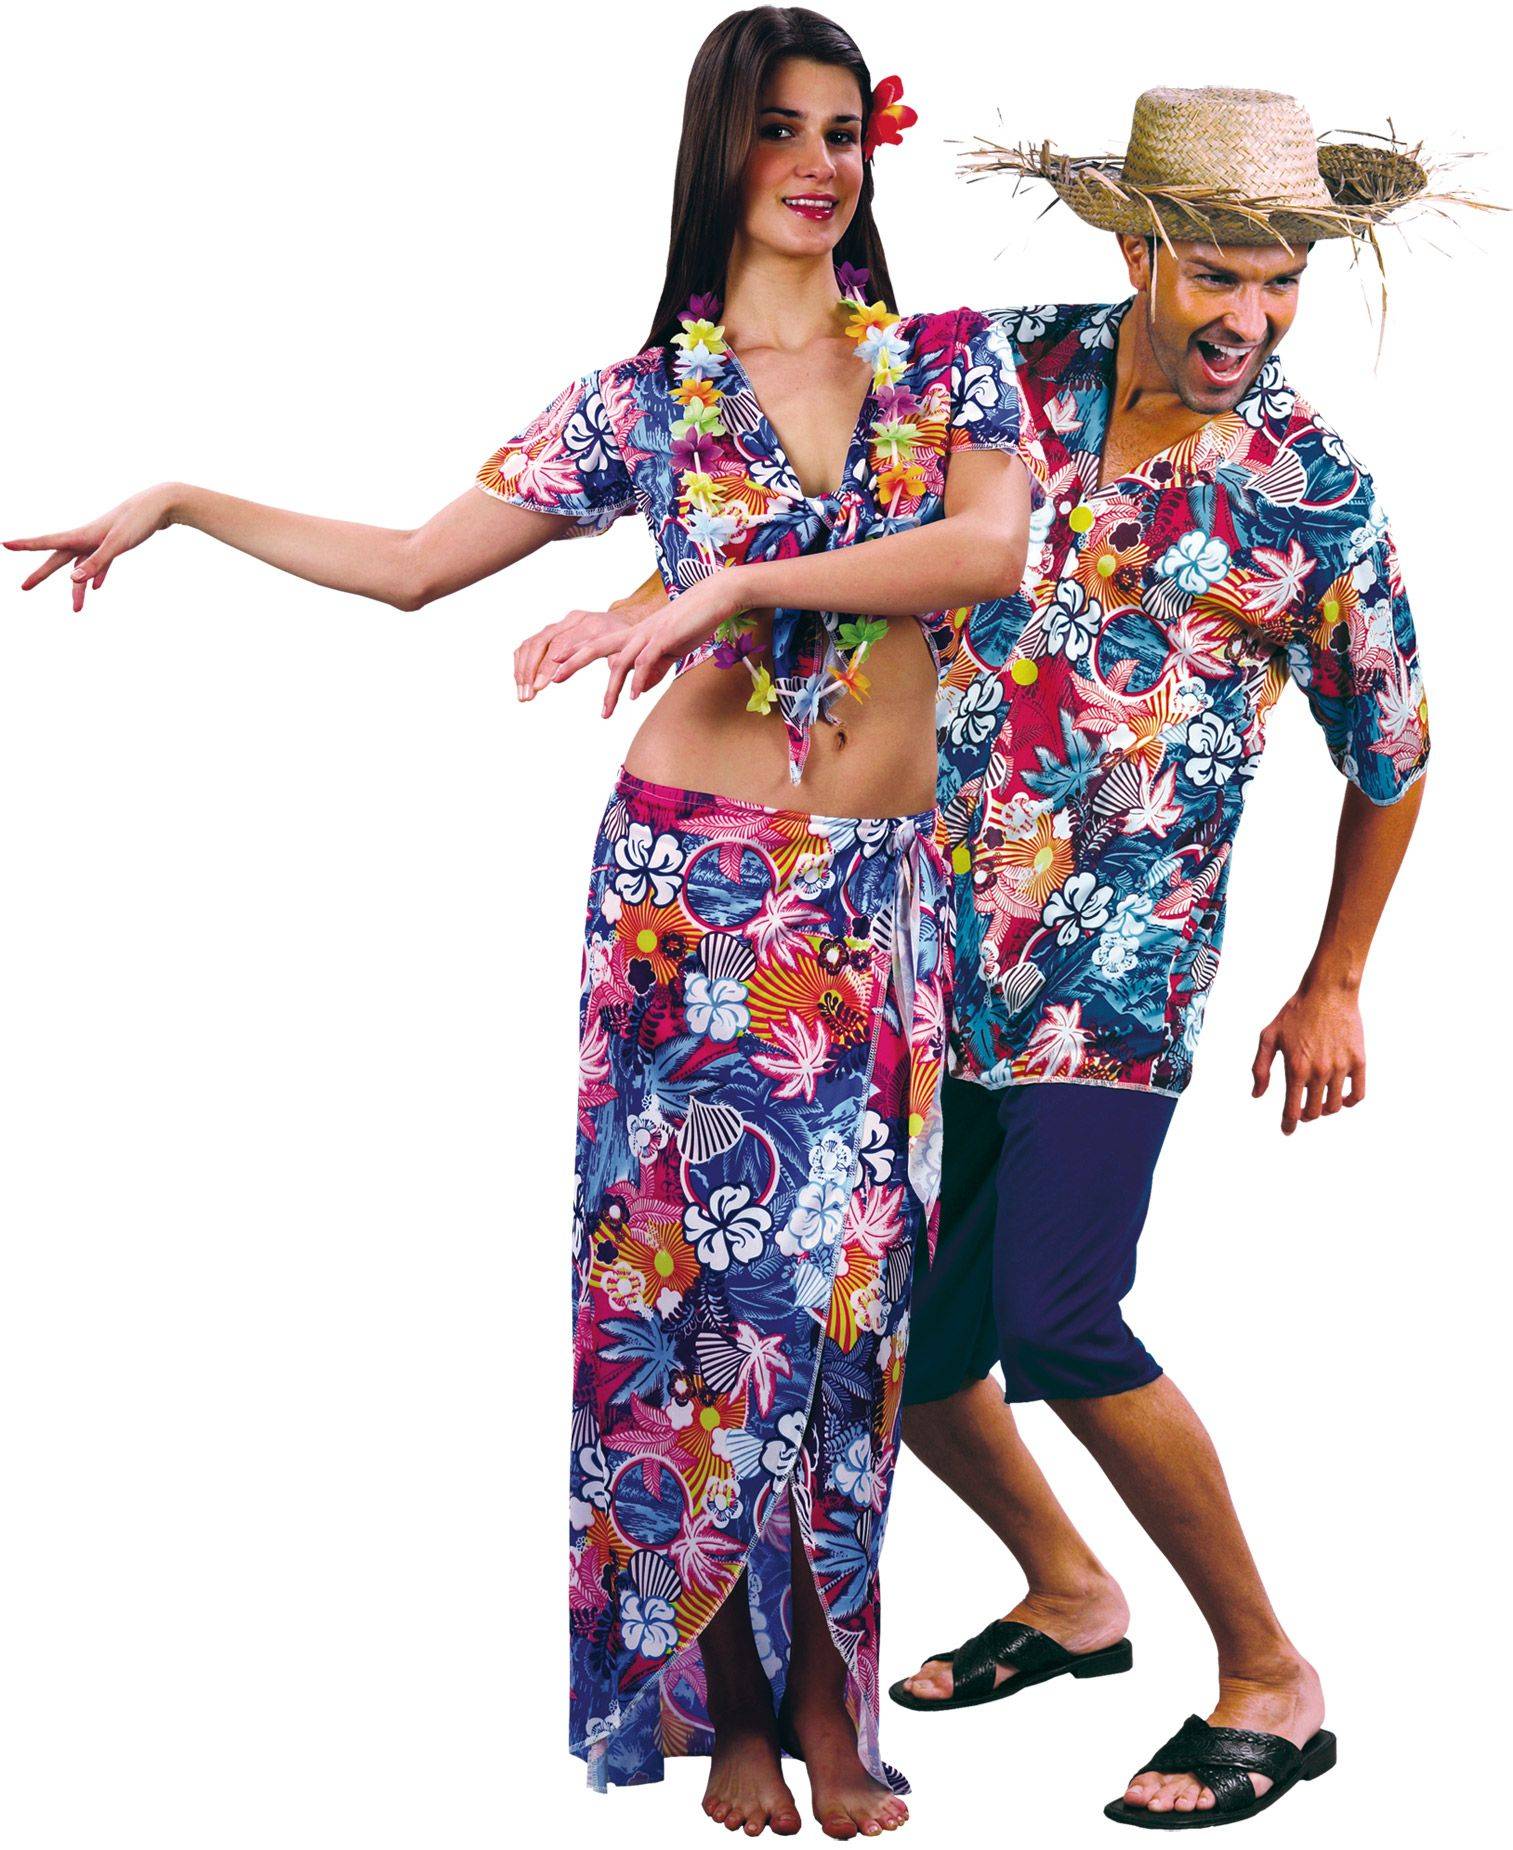 Вечеринка в гавайском стиле - оформление, костюмы для женщин и мужчин, музыка